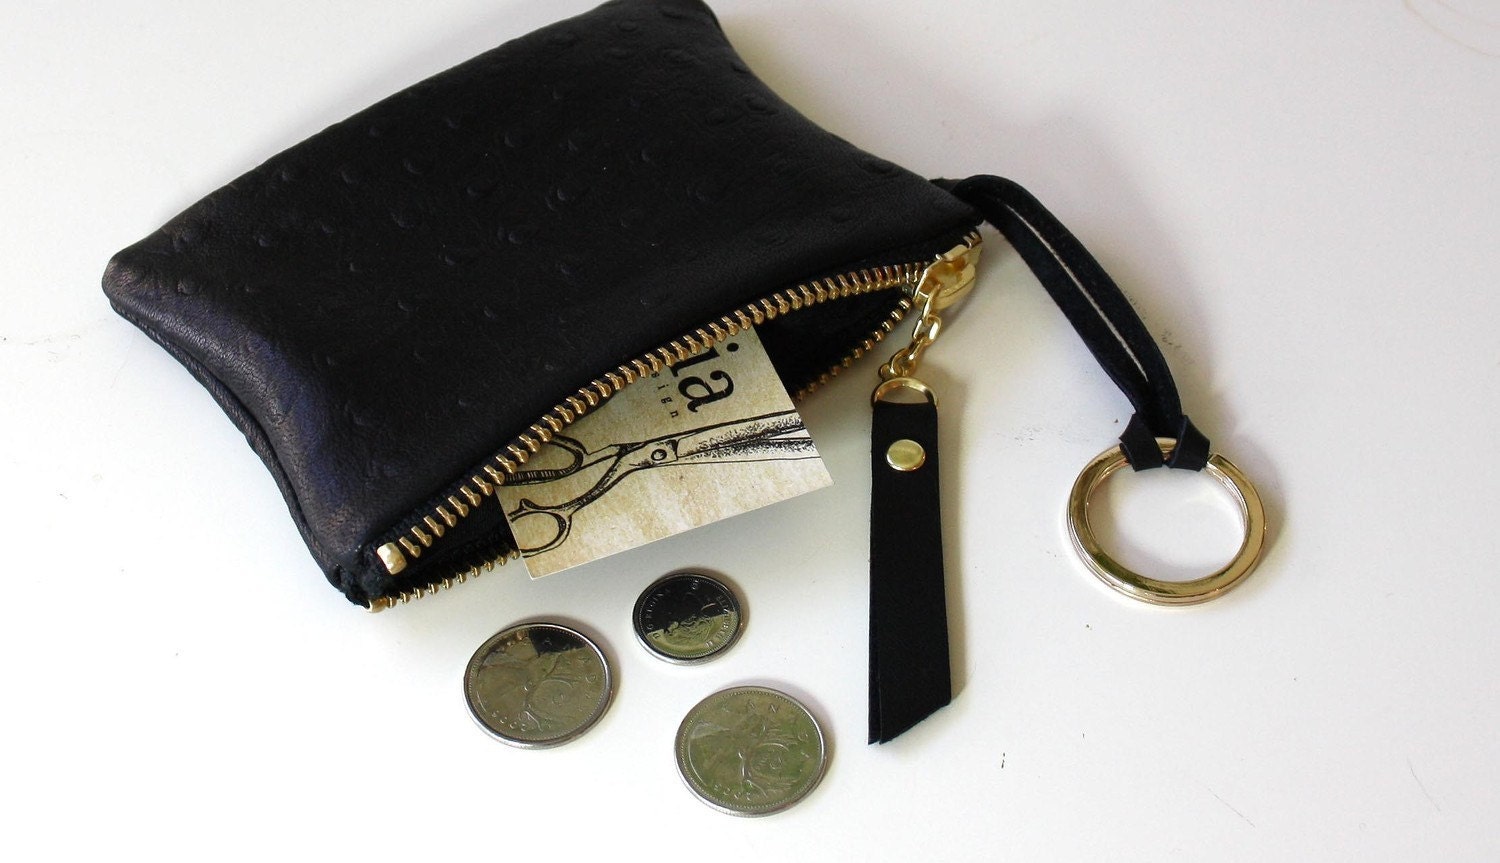 OPELLE - Pouchette Key Purse - Black Washed Lambskin Leather